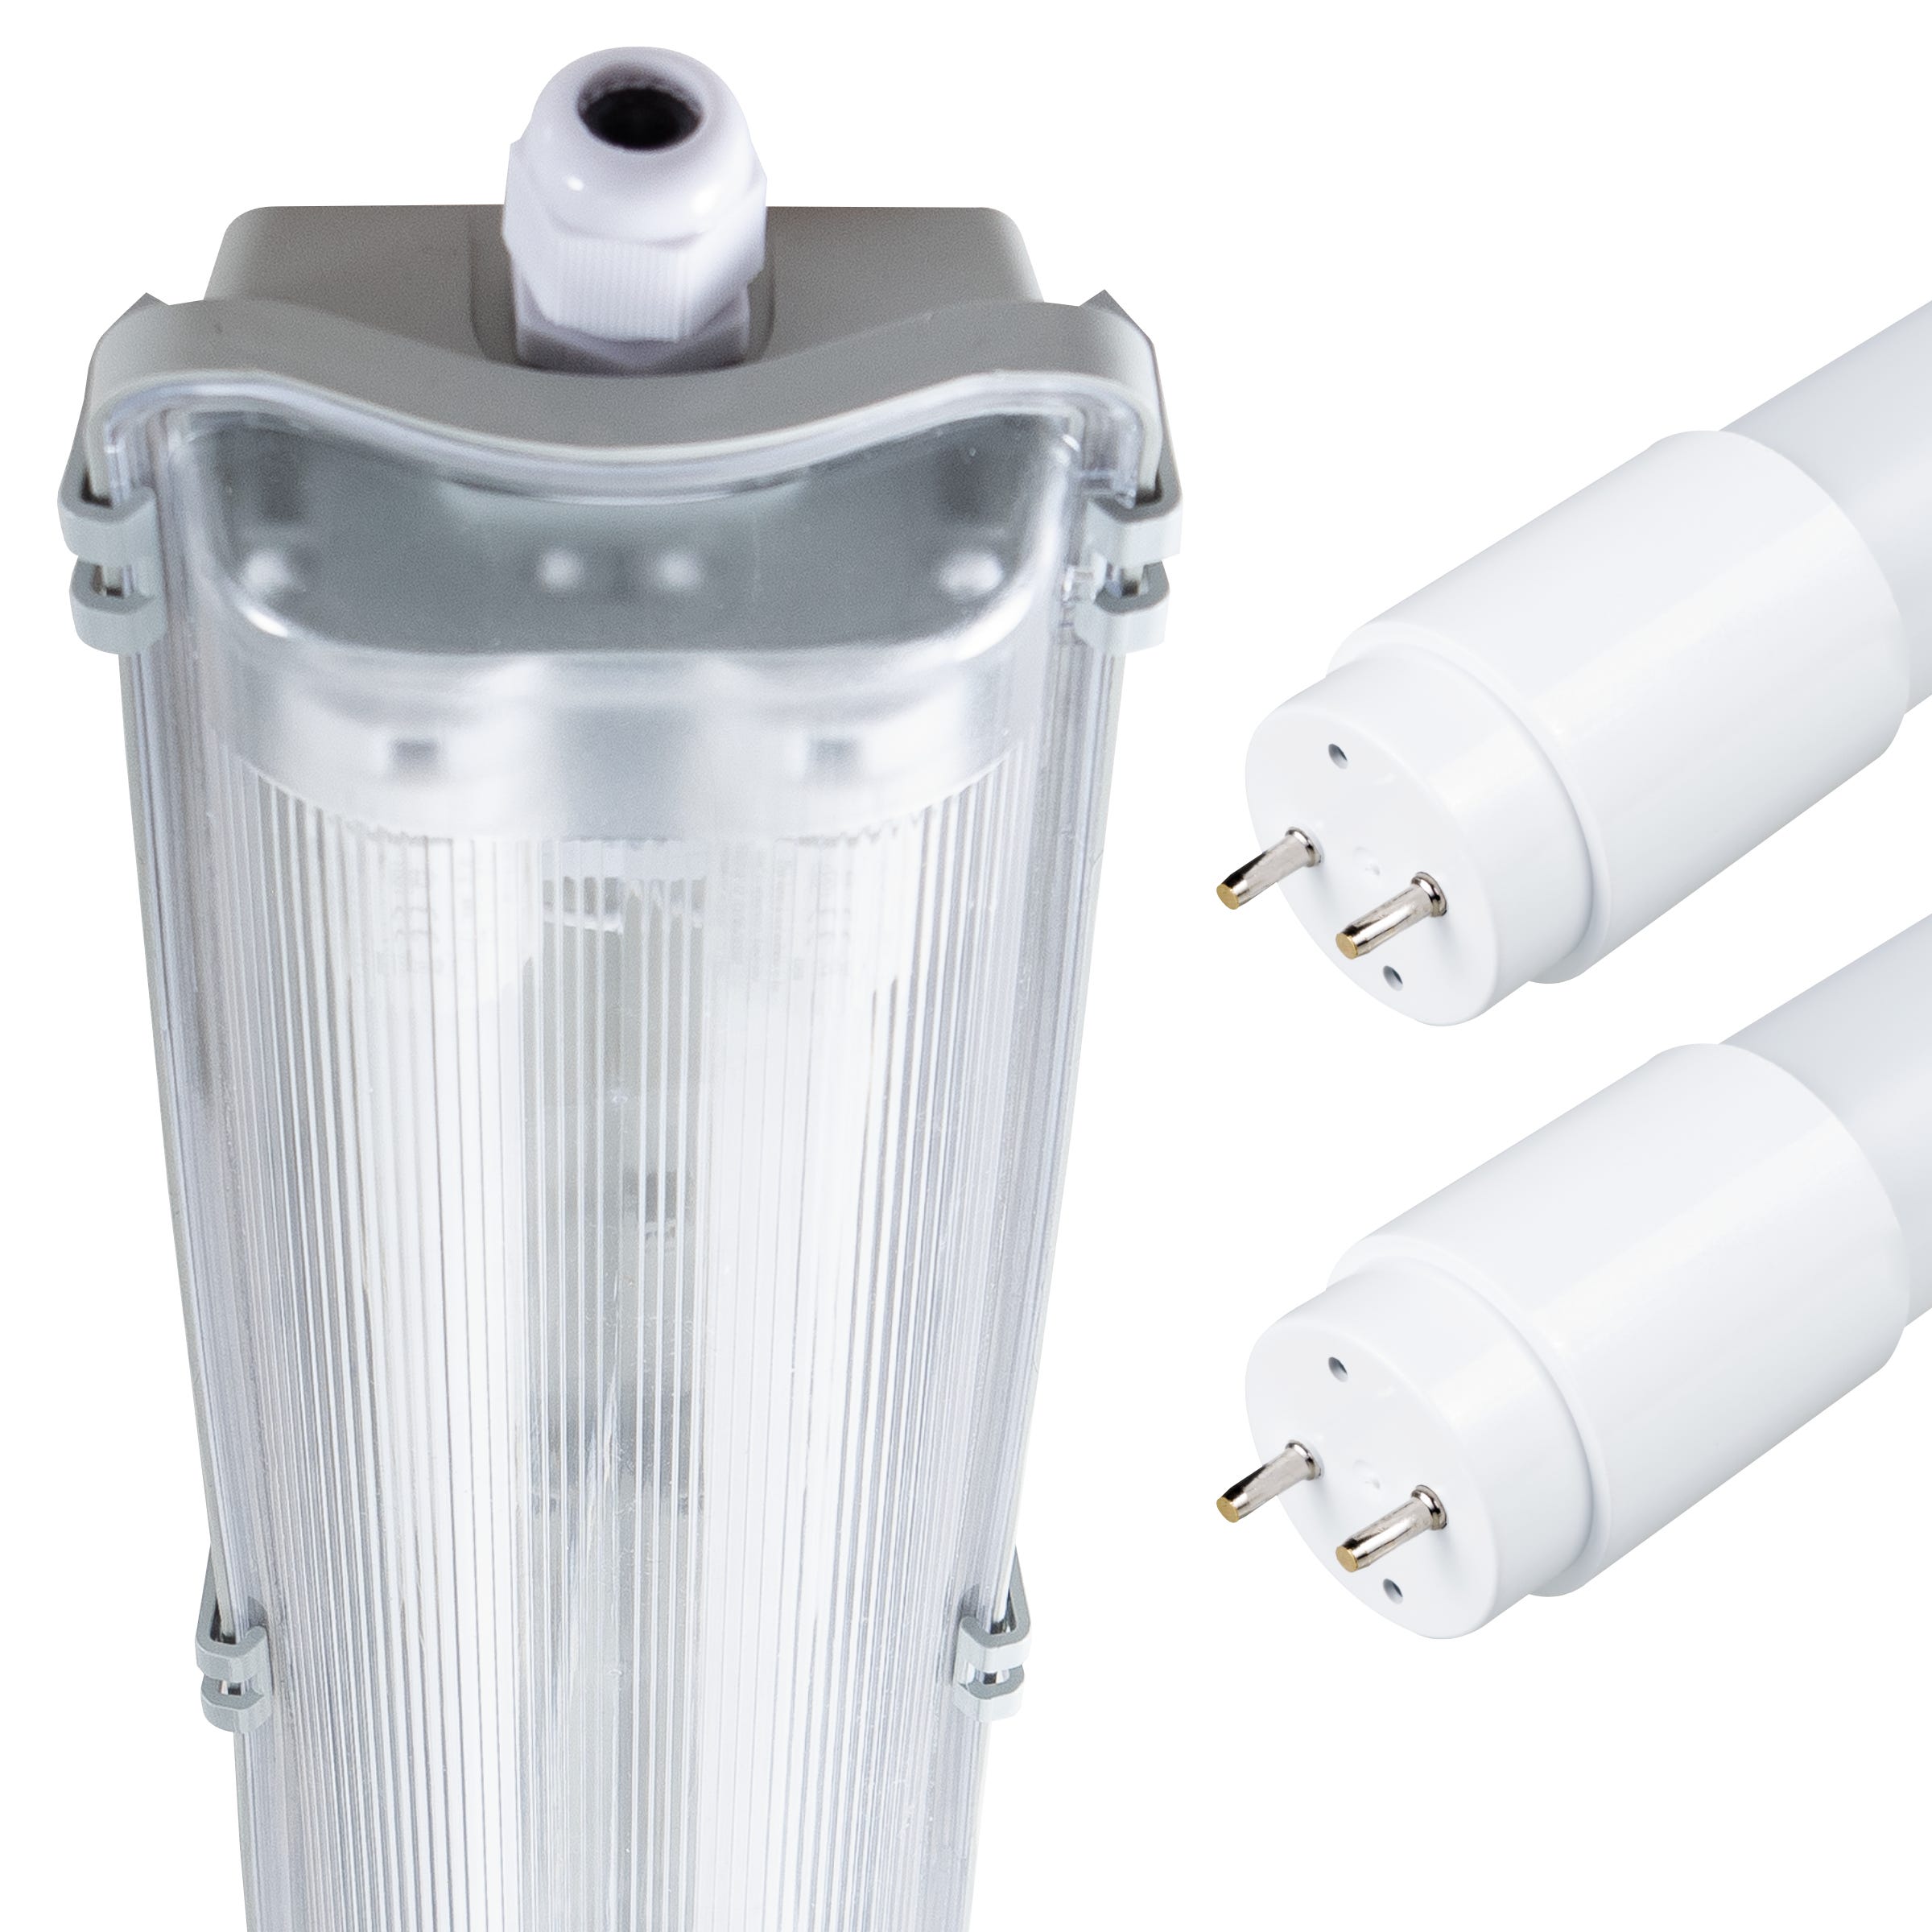 Comprar tubo de LED 120 centímetros, equivalente al tubo fluorescente de 36W